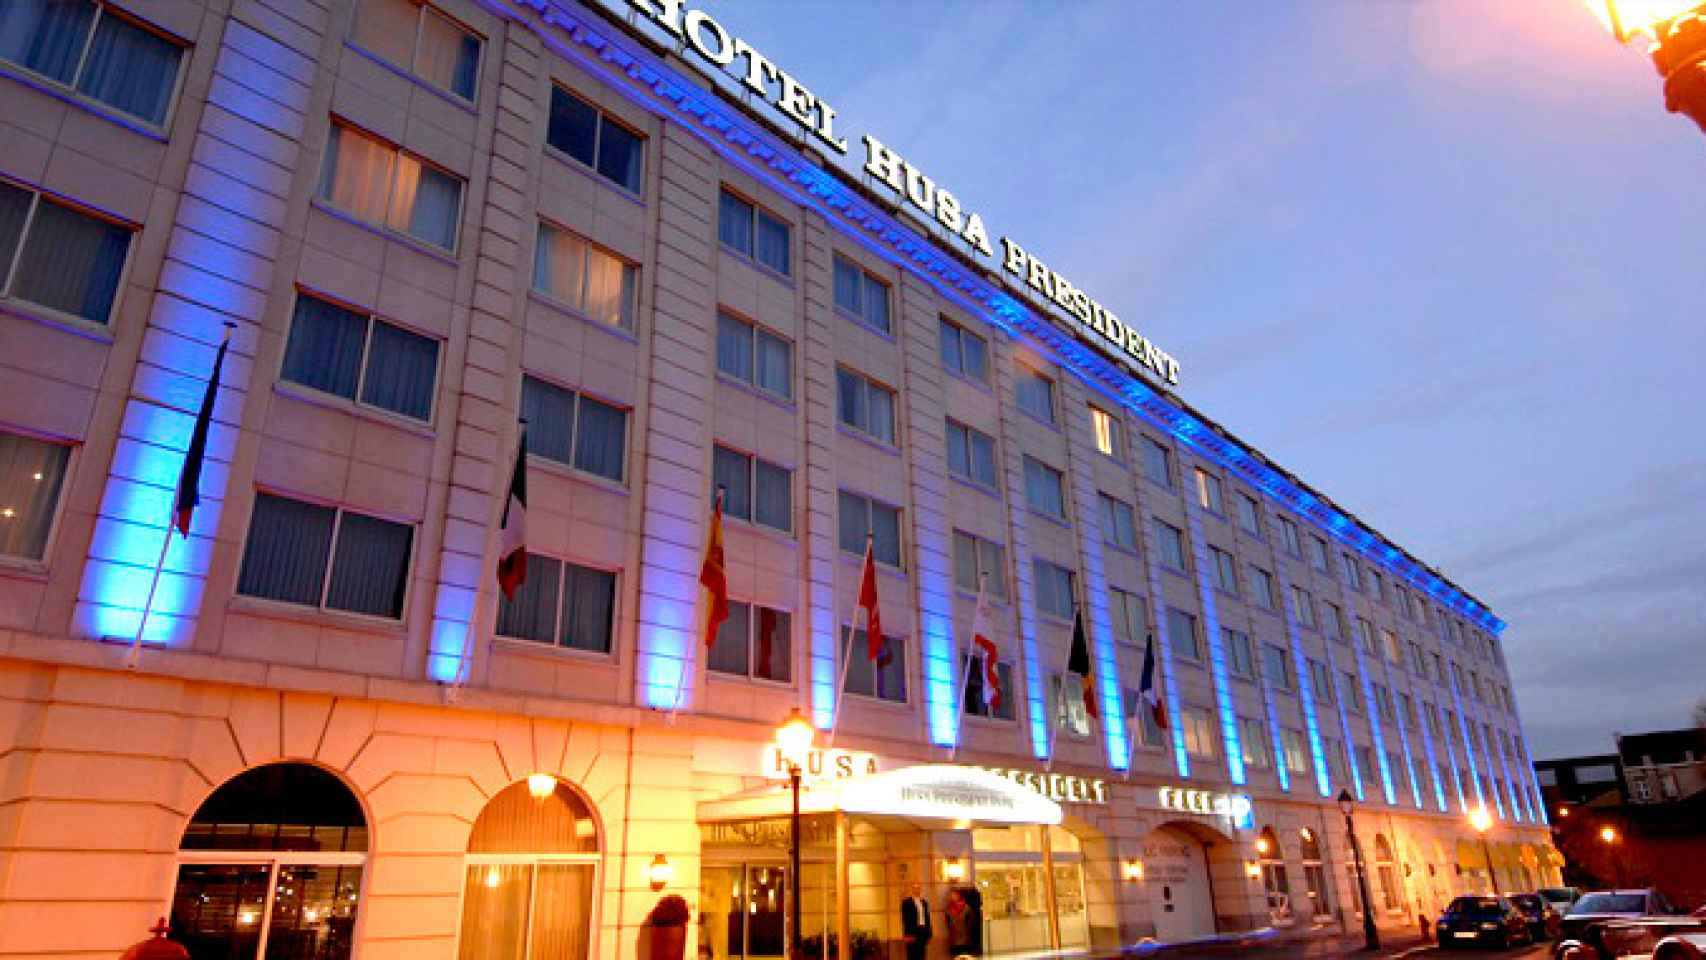 Entrada al hotel Husa President Park en Bruselas, Bélgica, que ha suspendido pagos / HUSA HOTELES